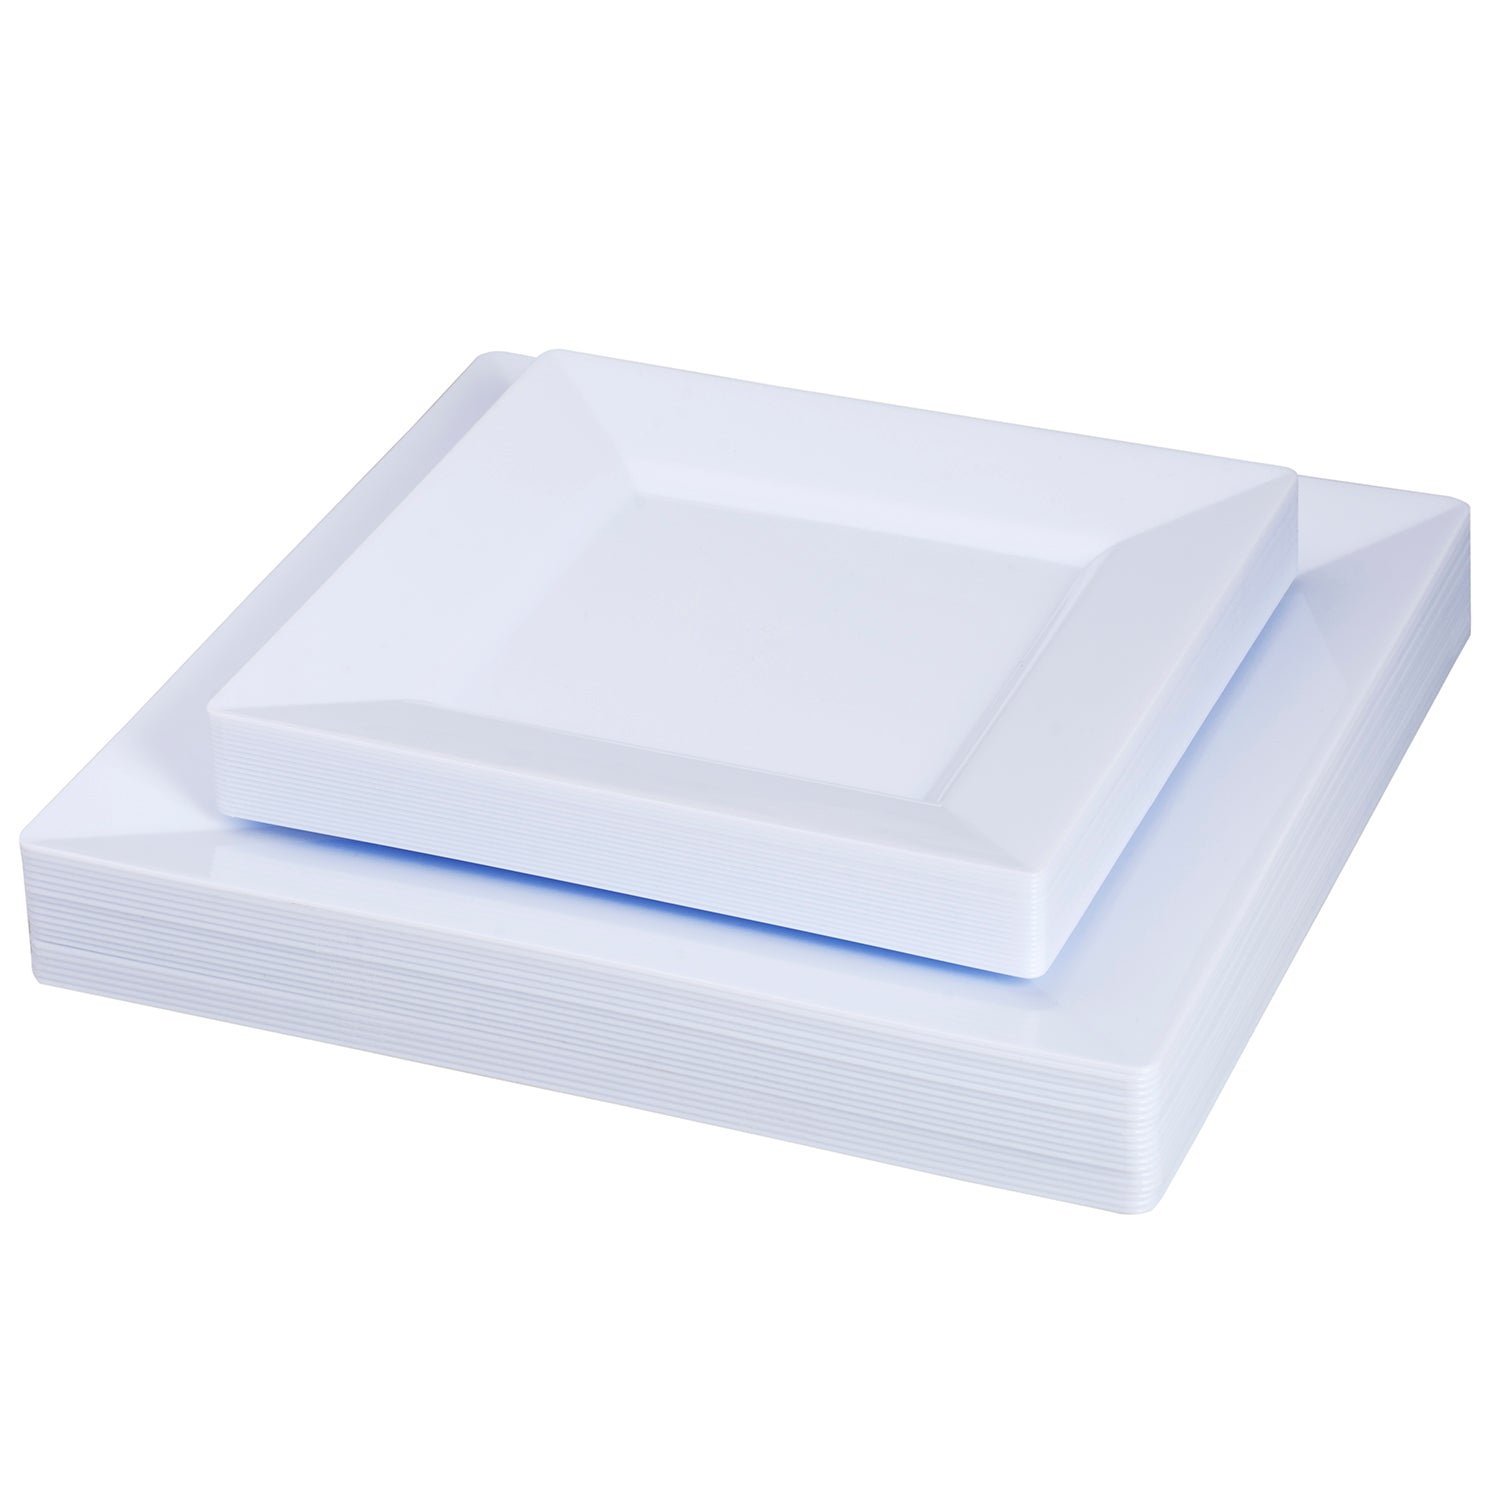 Square plastic plates